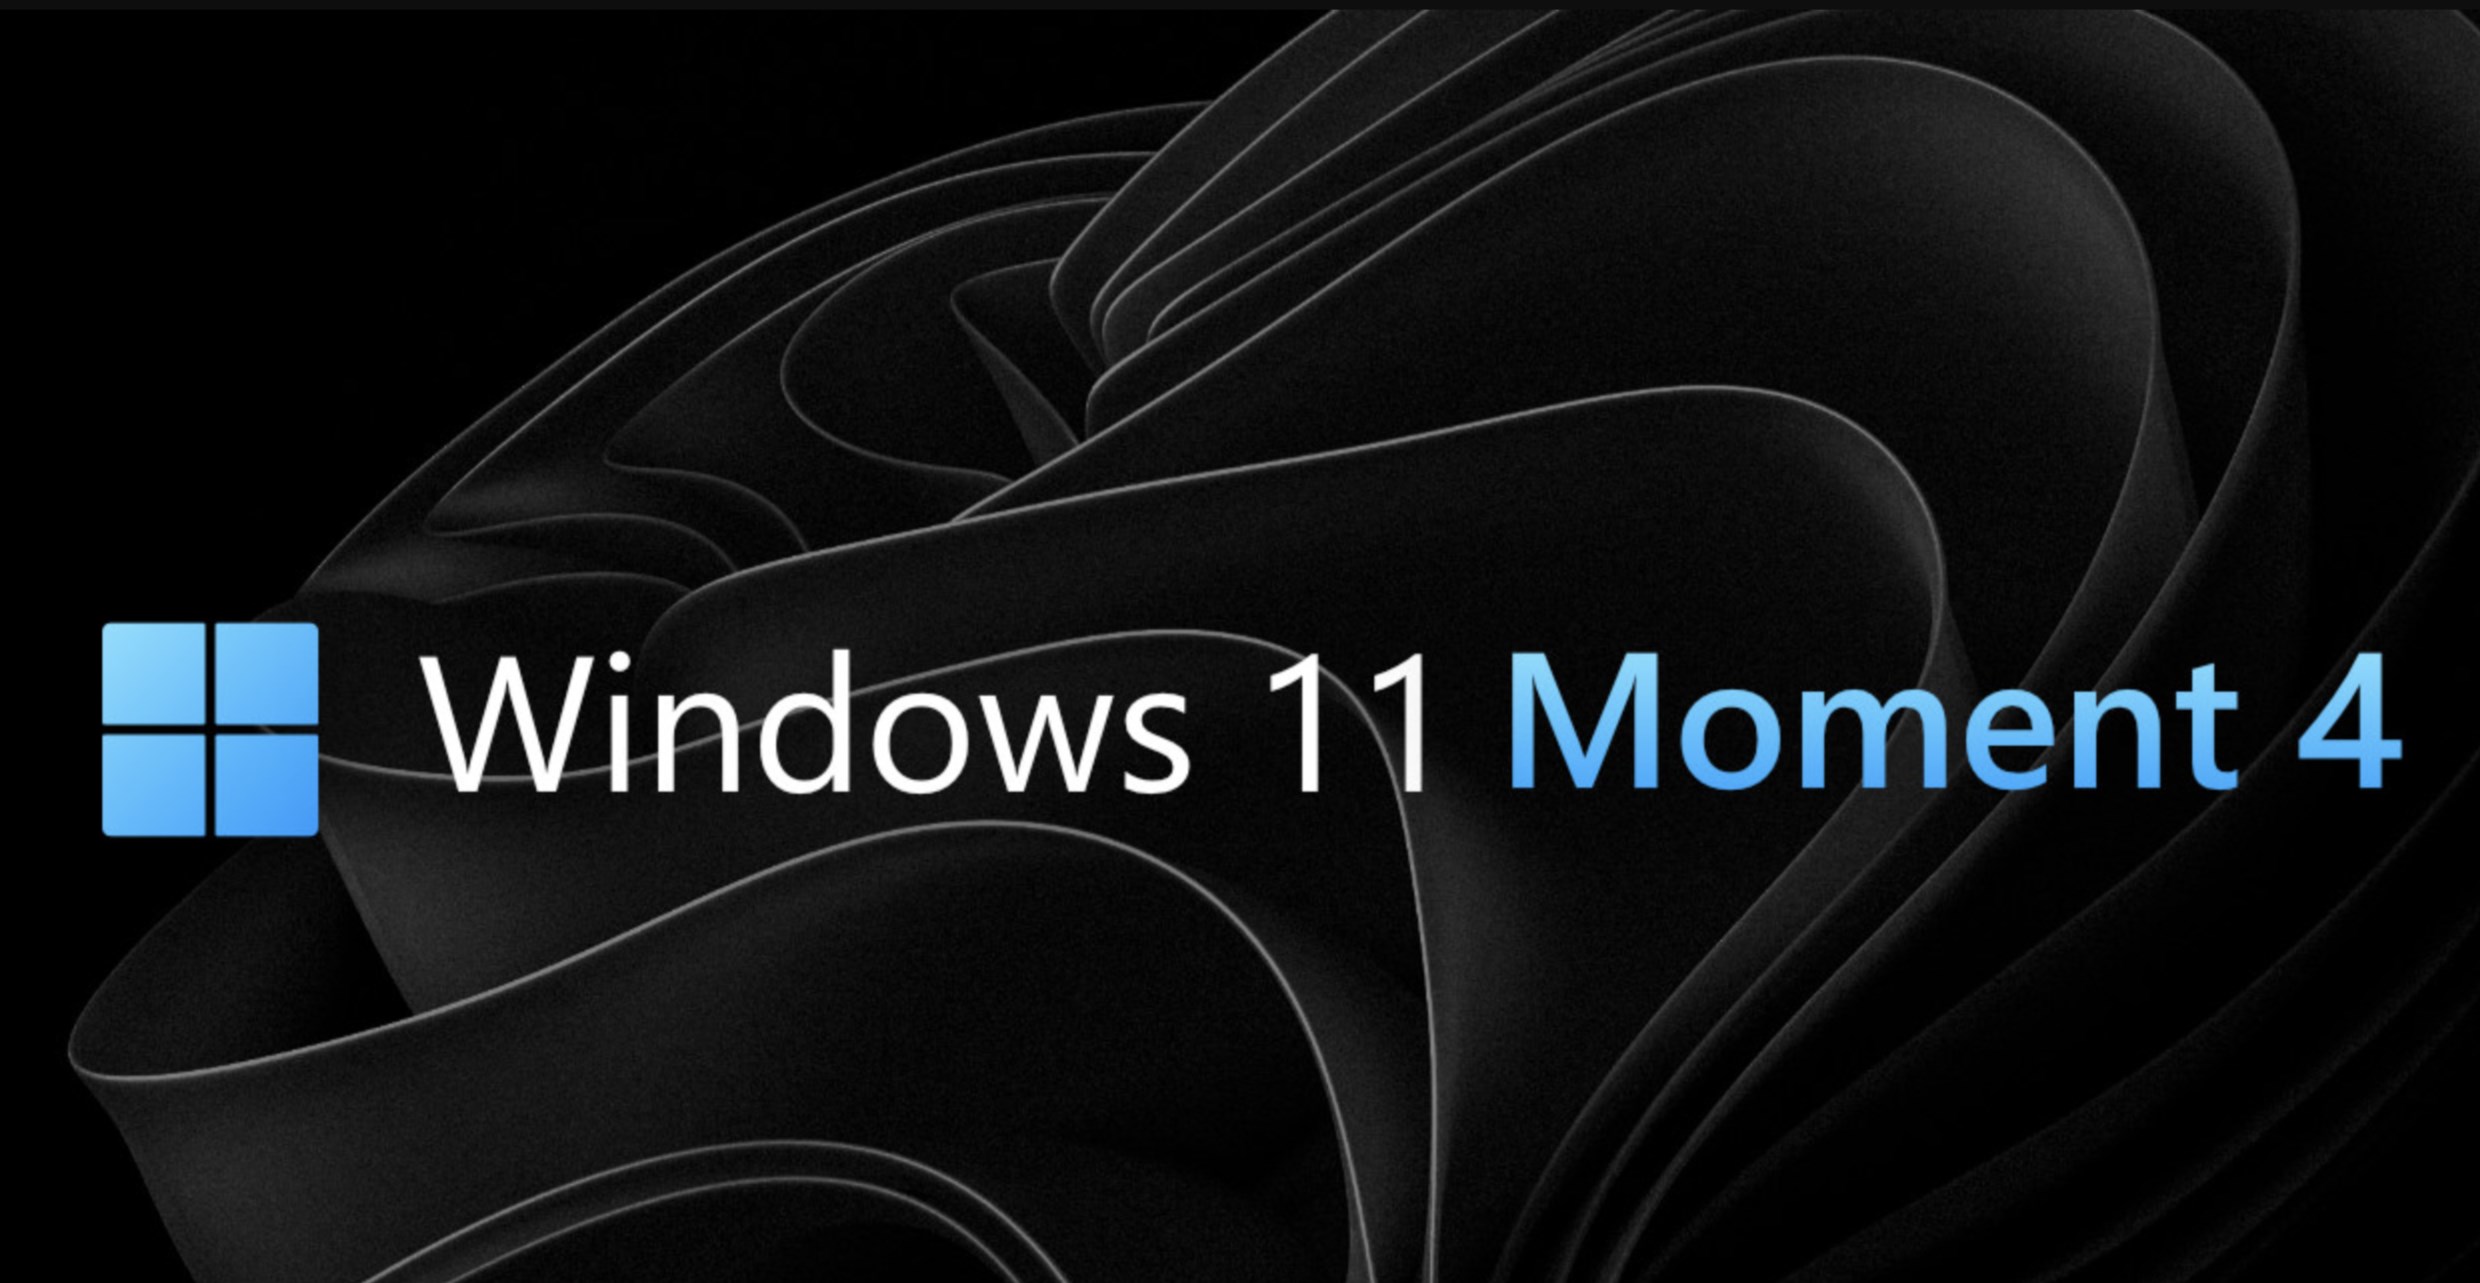 Windows 11 Moment 4 güncellemesi yayınlandı: Yenilikler neler?